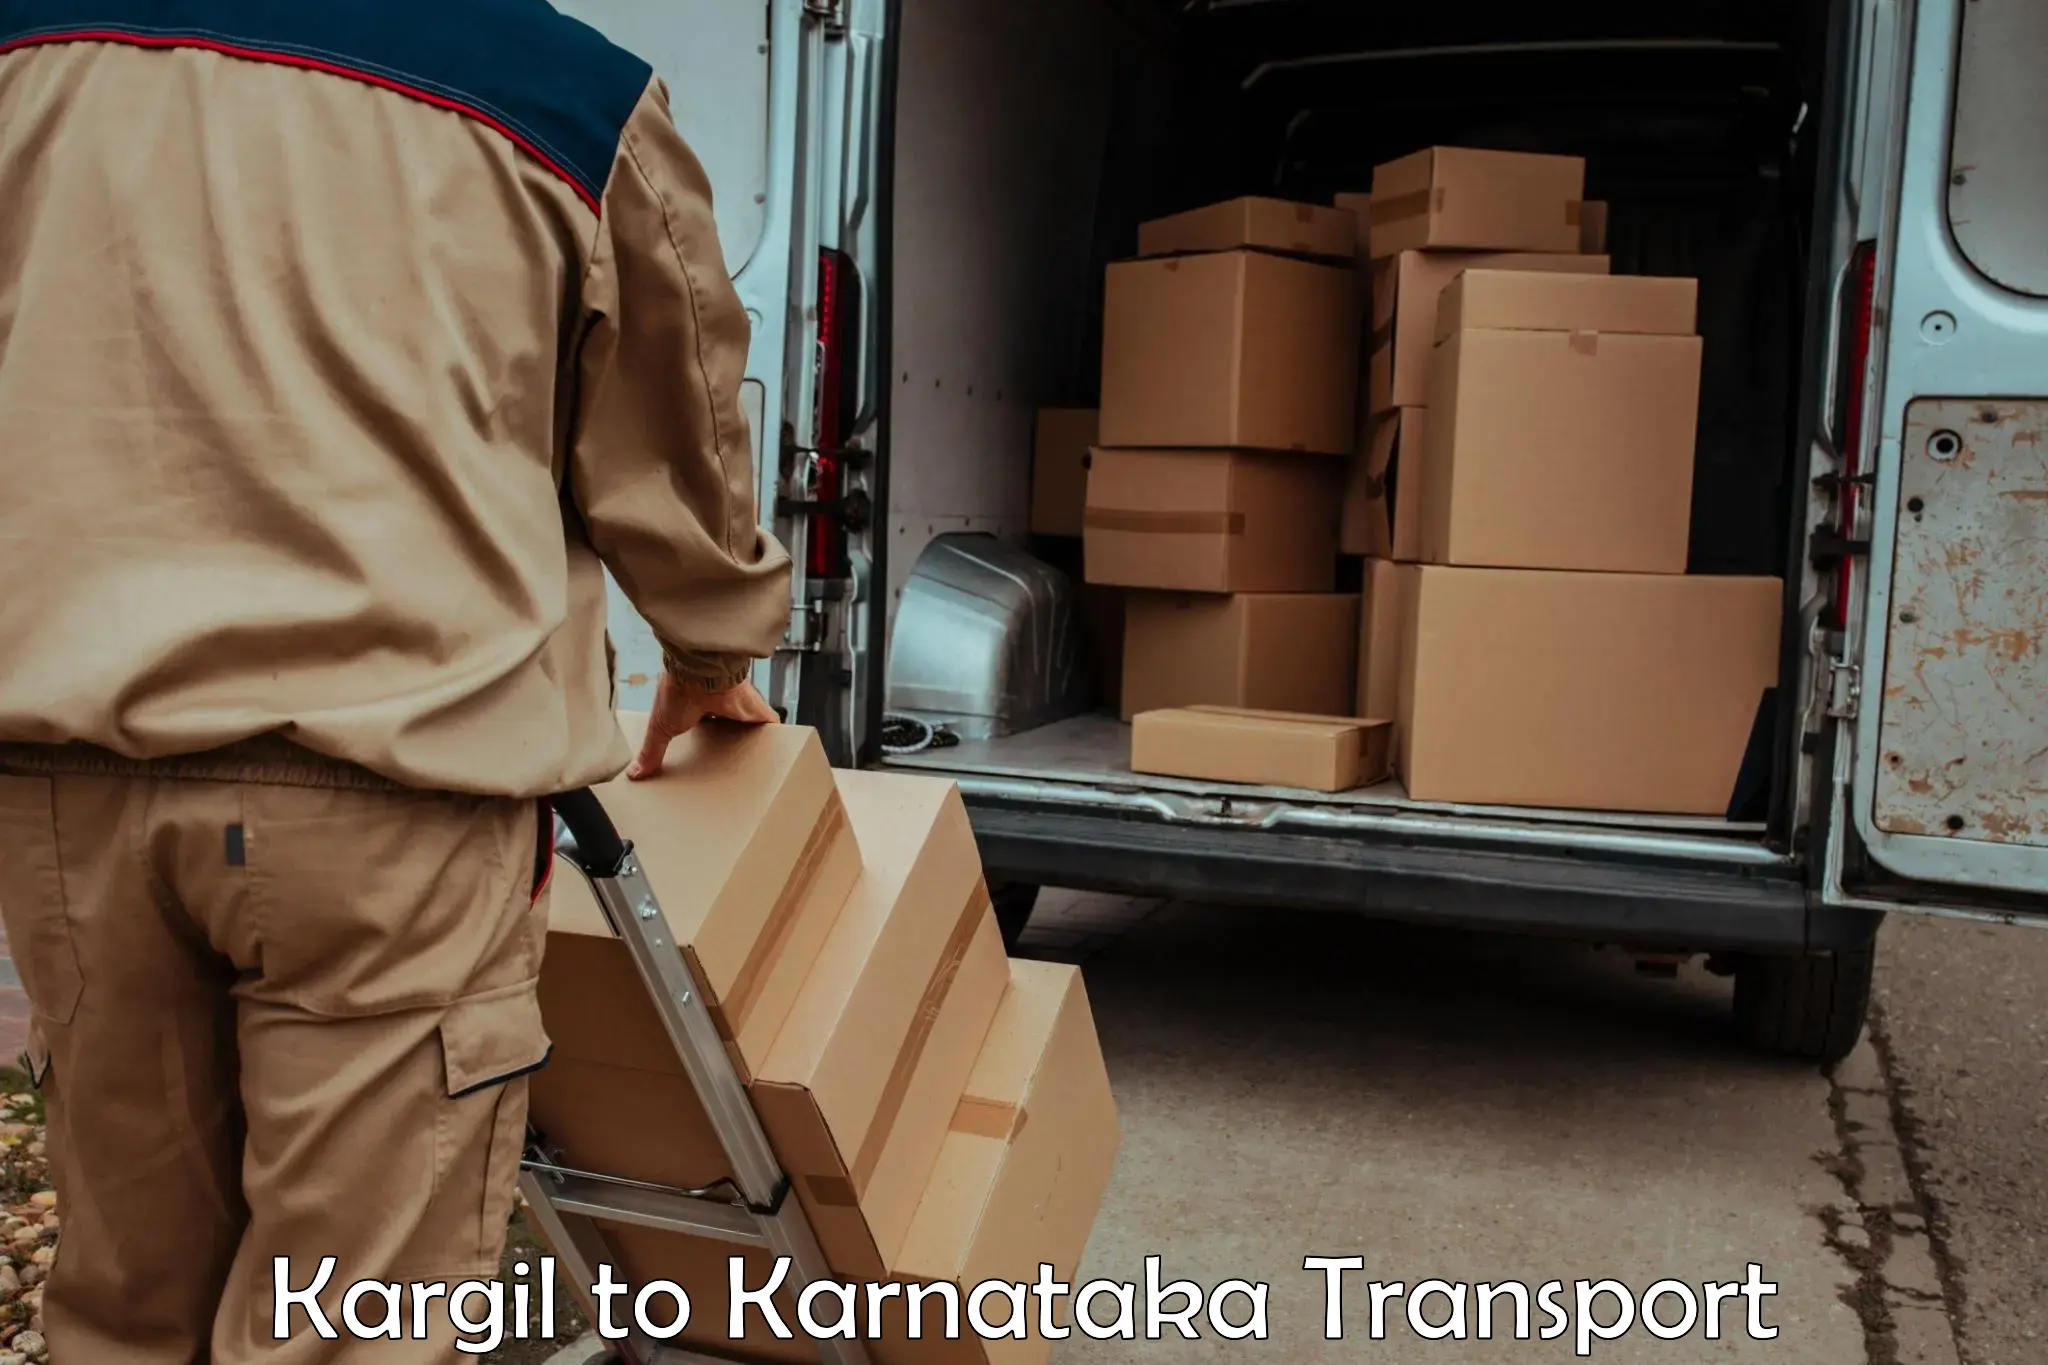 Furniture transport service Kargil to Karnataka